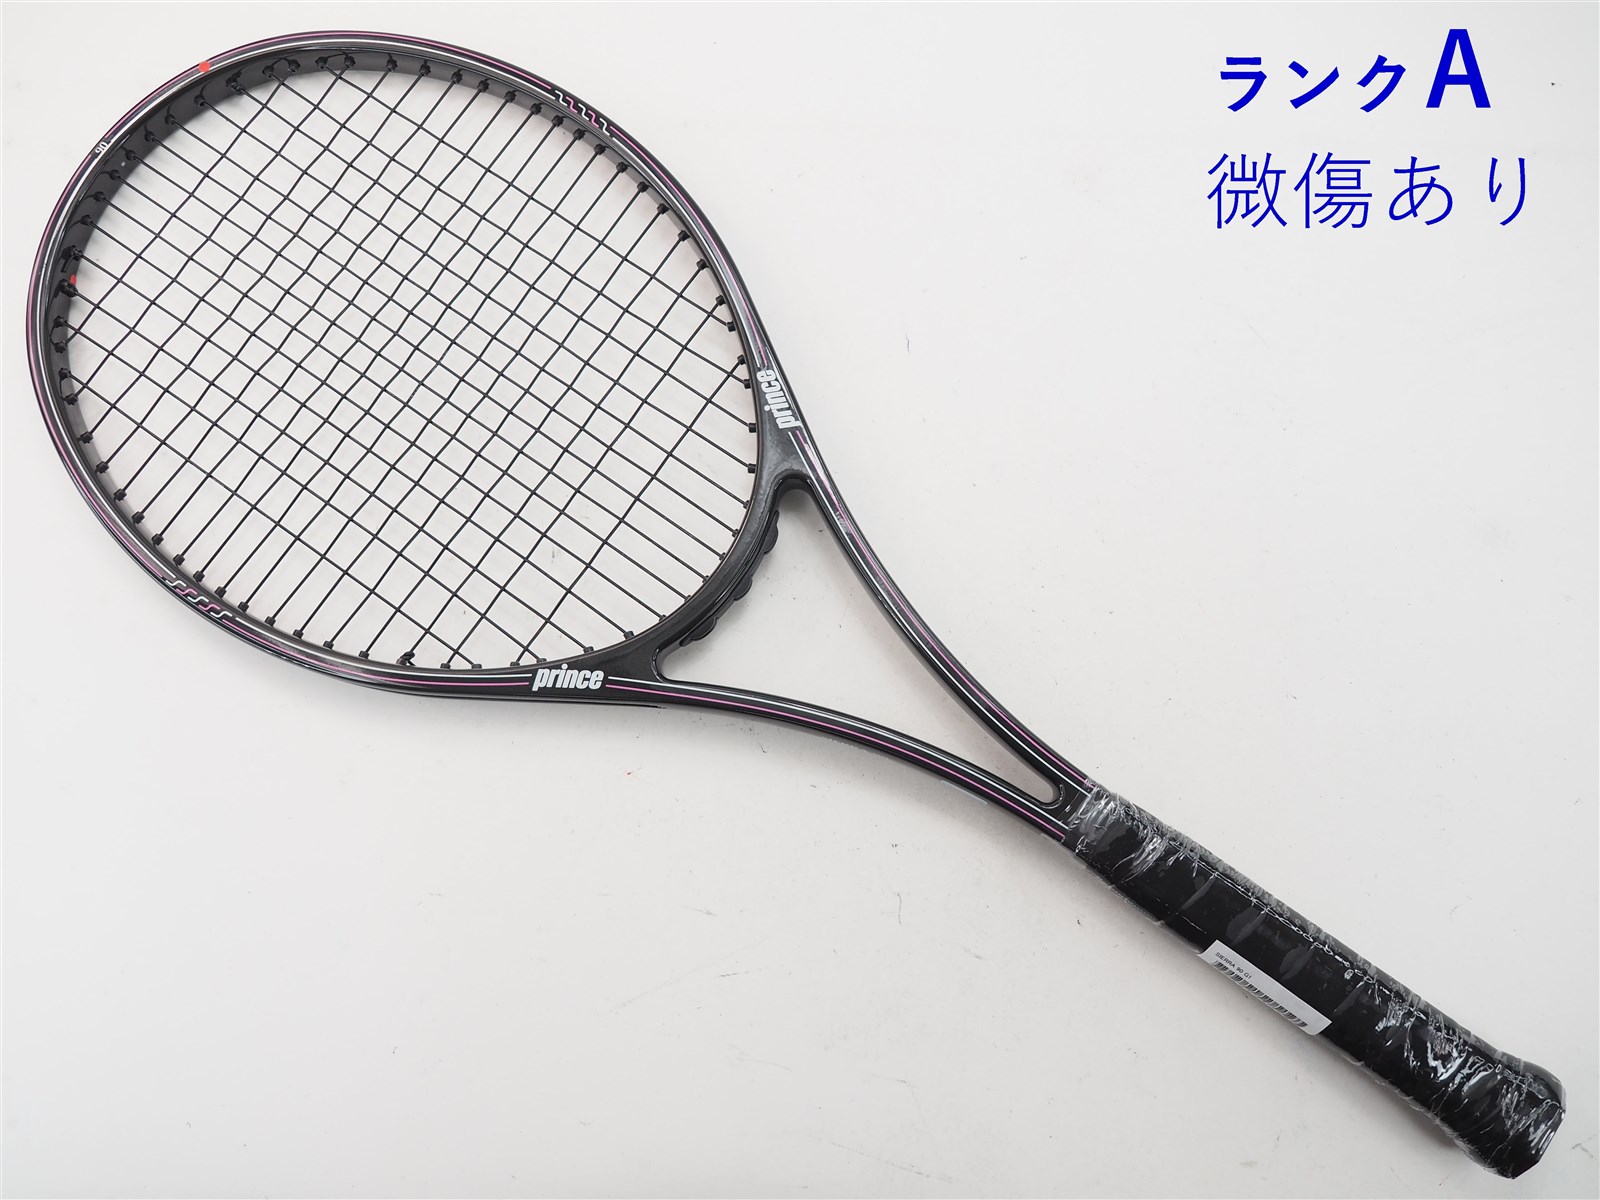 【中古】プリンス シエラ 90PRINCE SIERRA 90(G1)【中古 テニス 